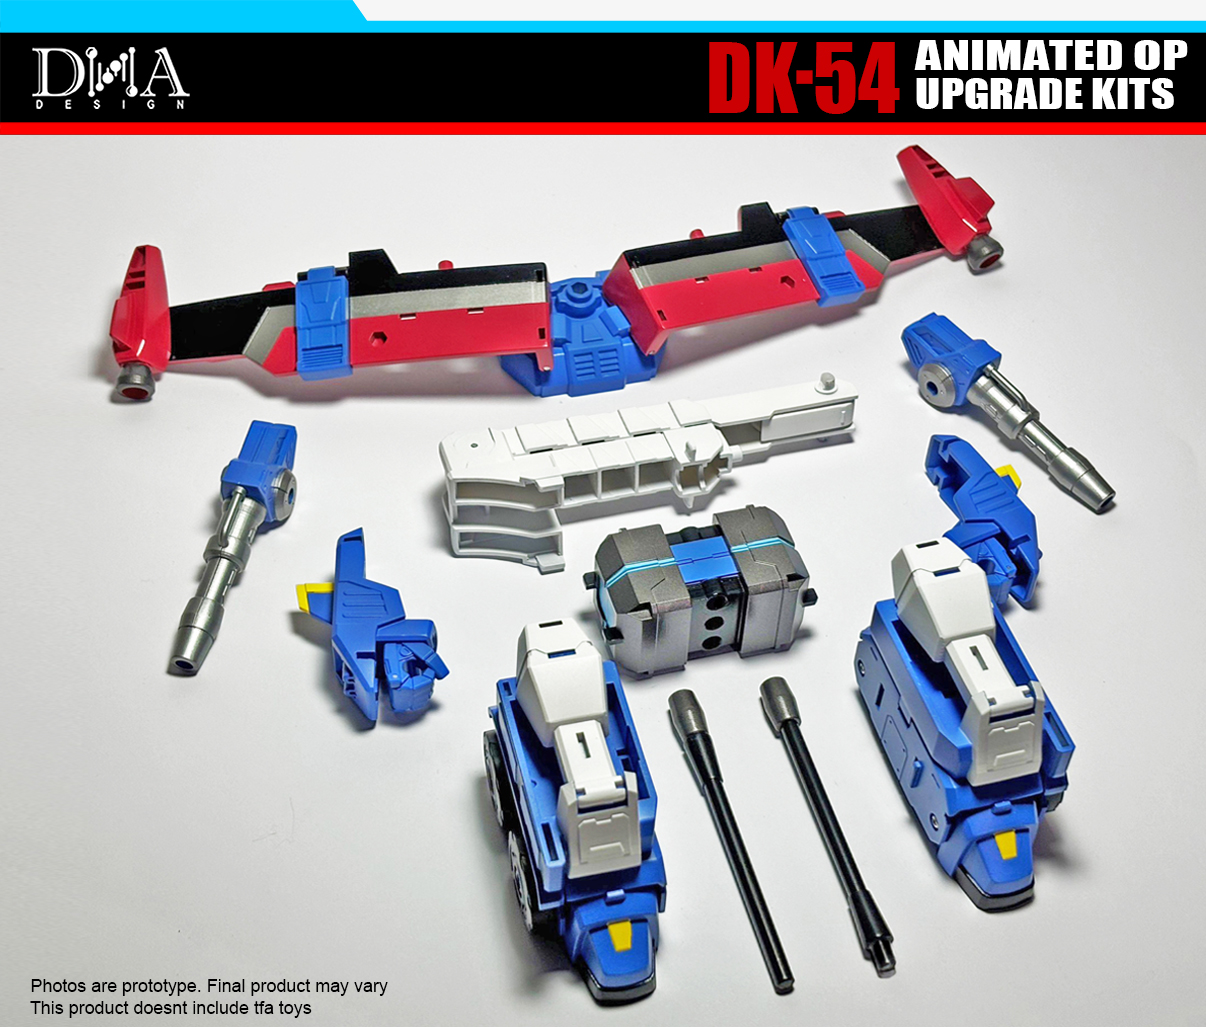 Dna Design Dk 54 Animated Op Upgrade Kits 14